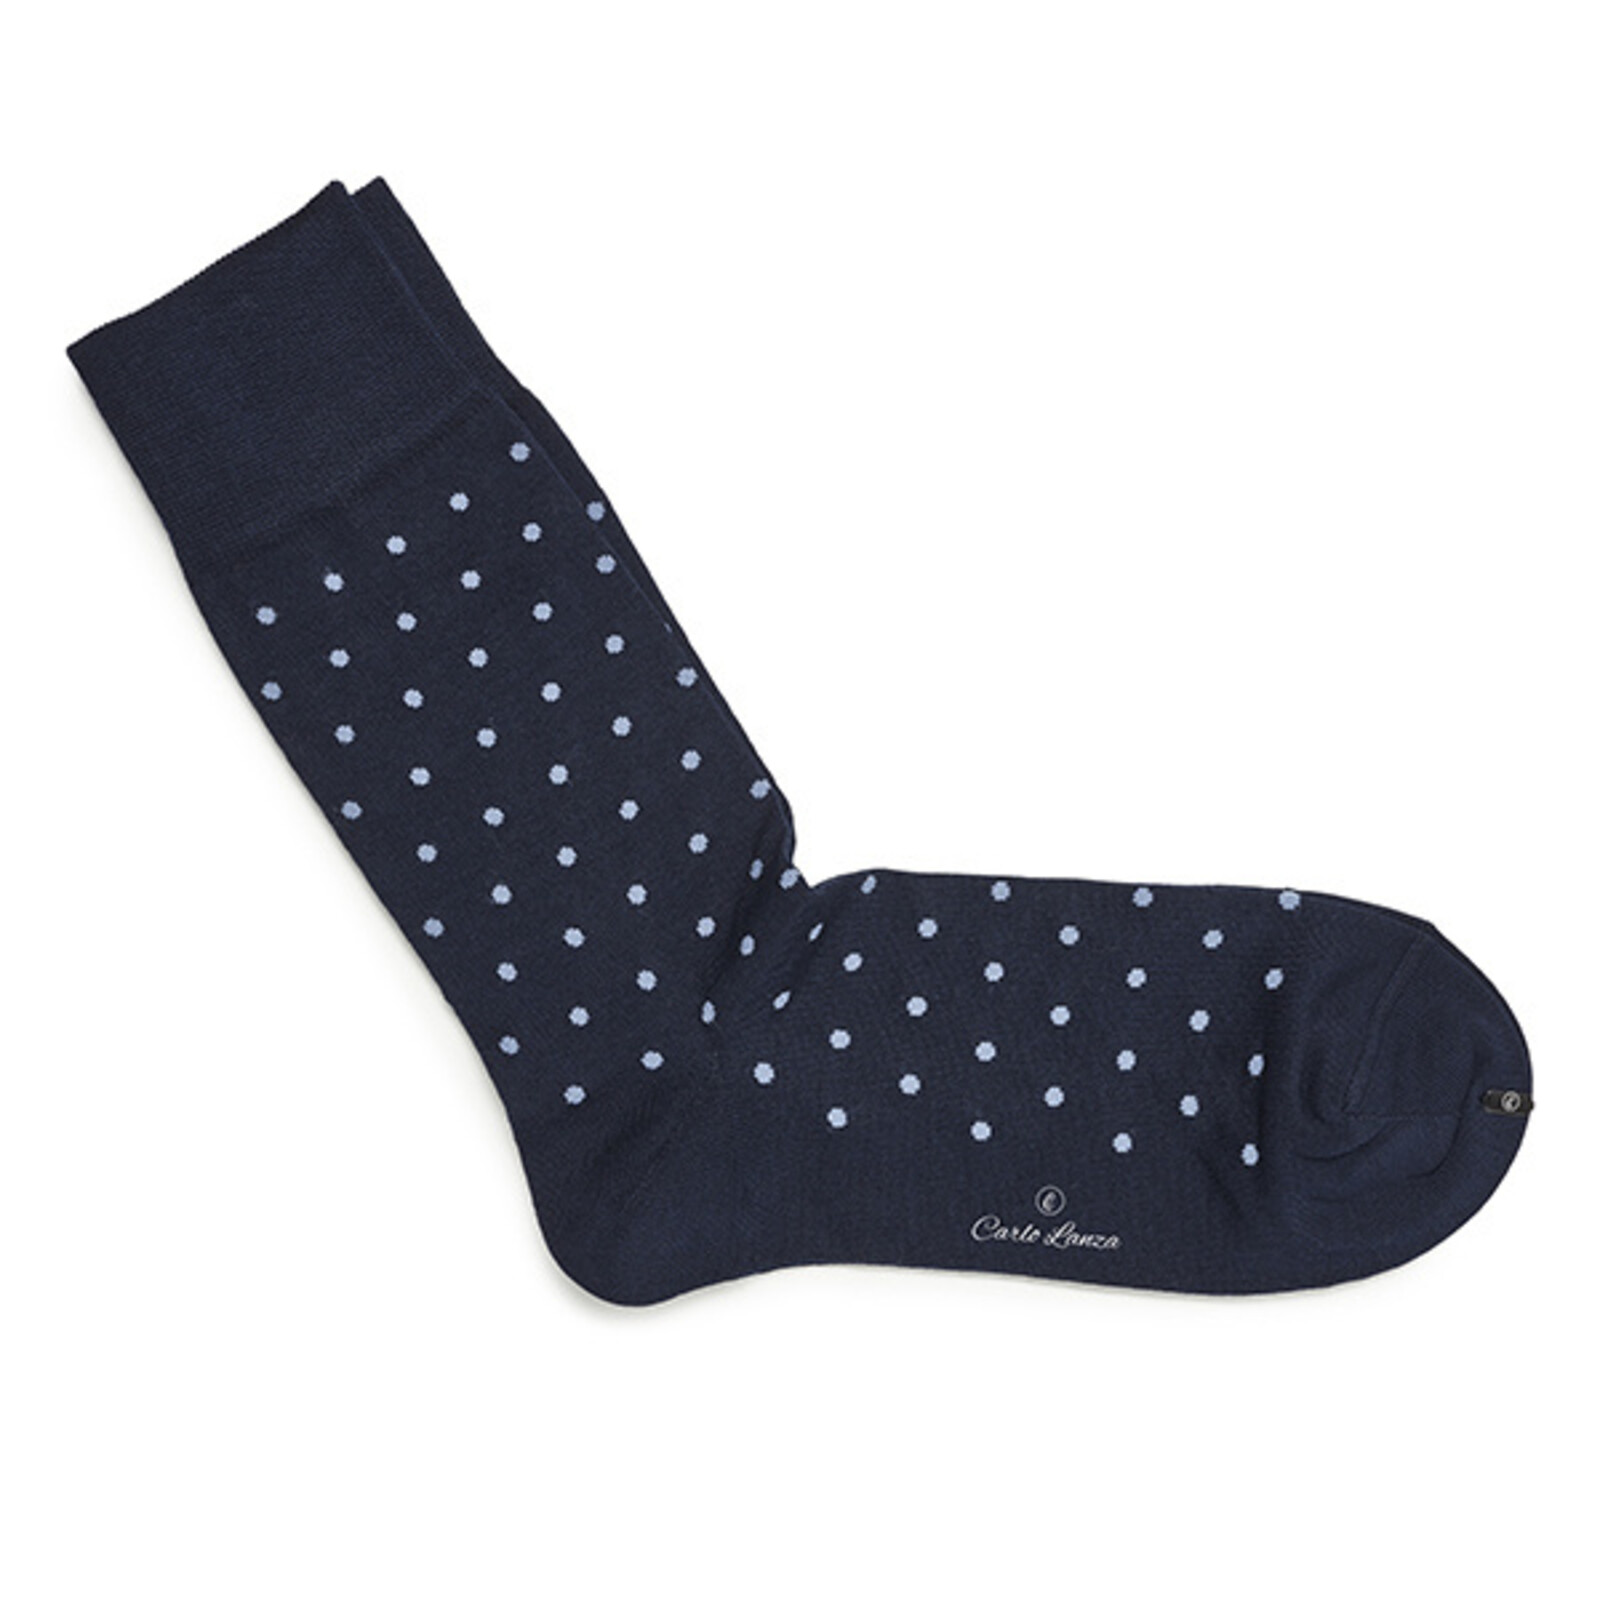 Carlo Lanza Darkblue dot socks